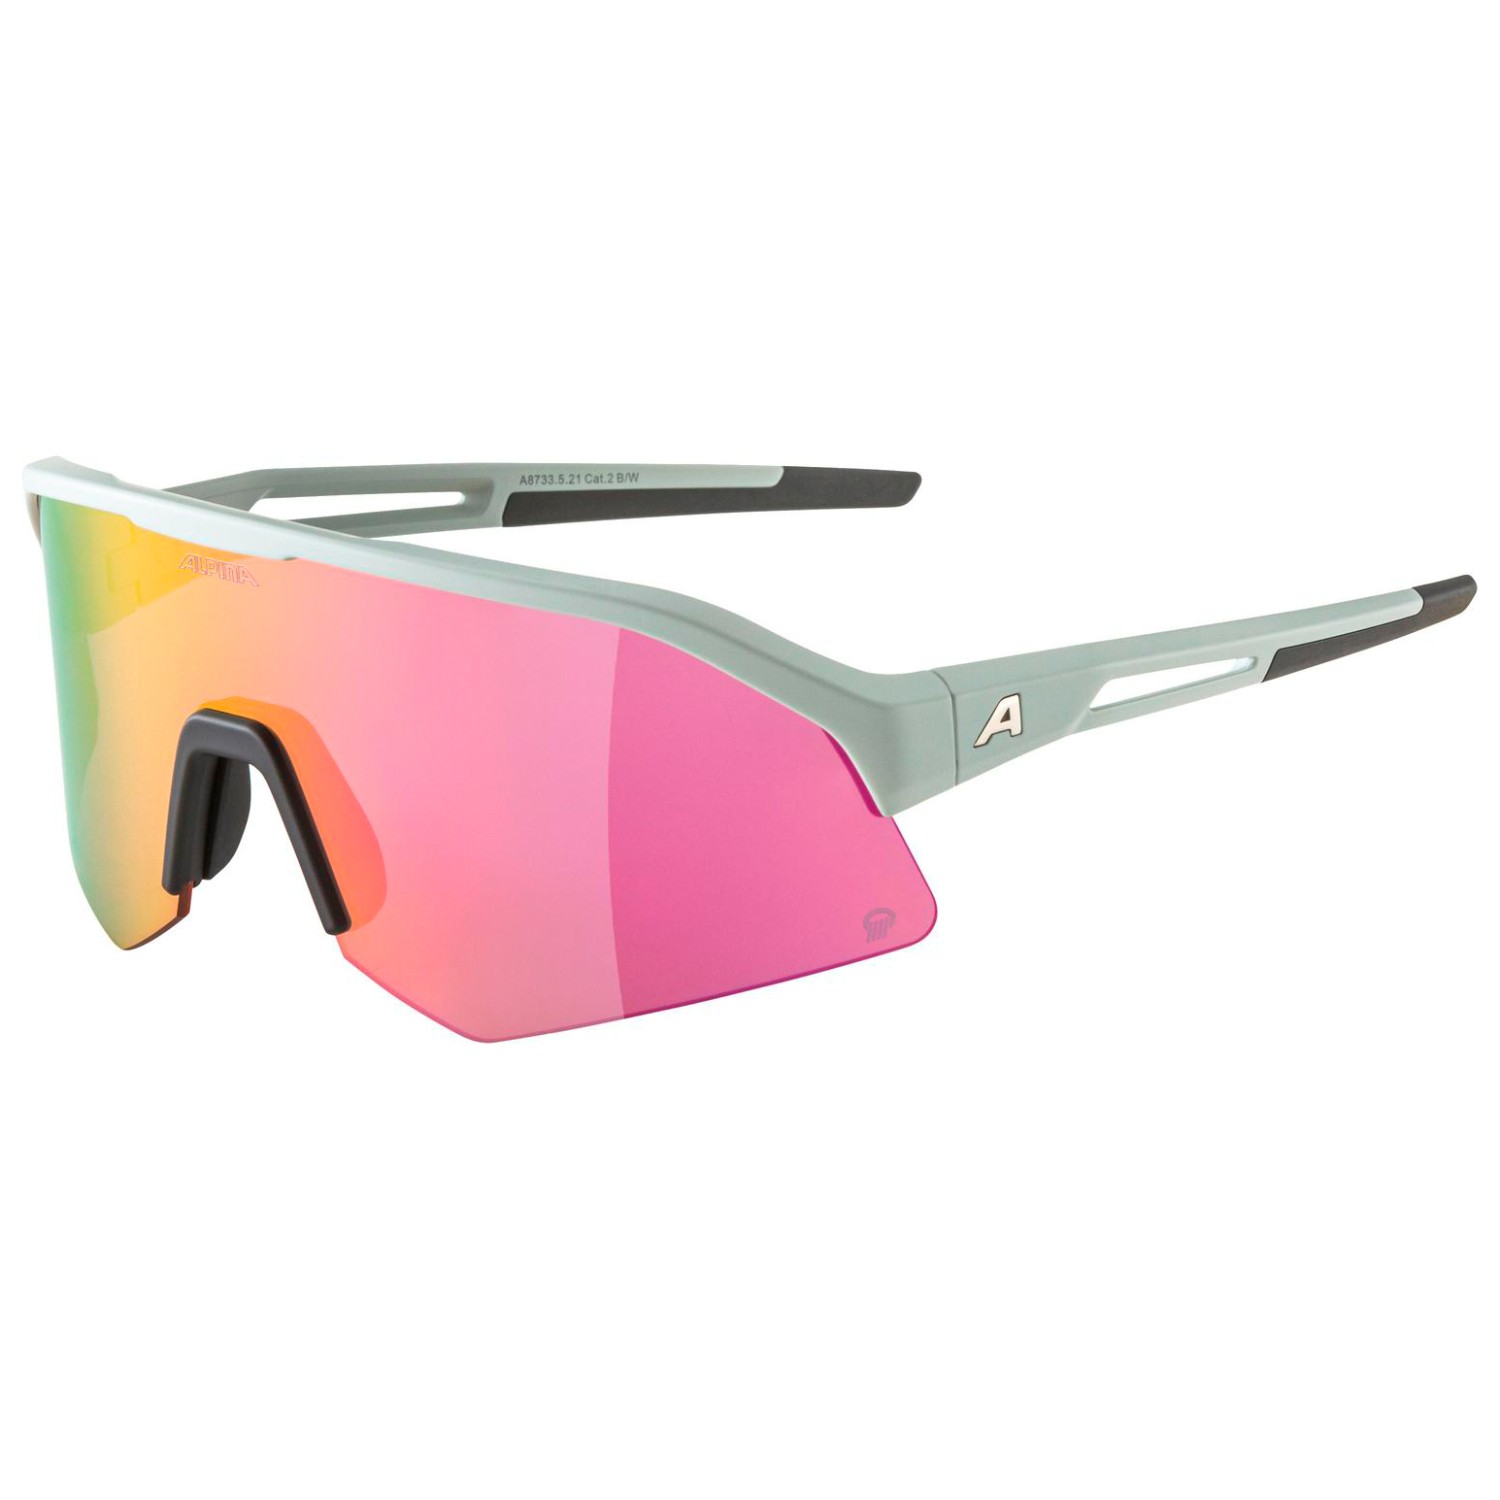 Велосипедные очки Alpina Sonic HR Q Mirror Cat 2, цвет Smoke/Grey Matt очки солнцезащитные alpina luzy белый пурпурный зеркальный a8571310